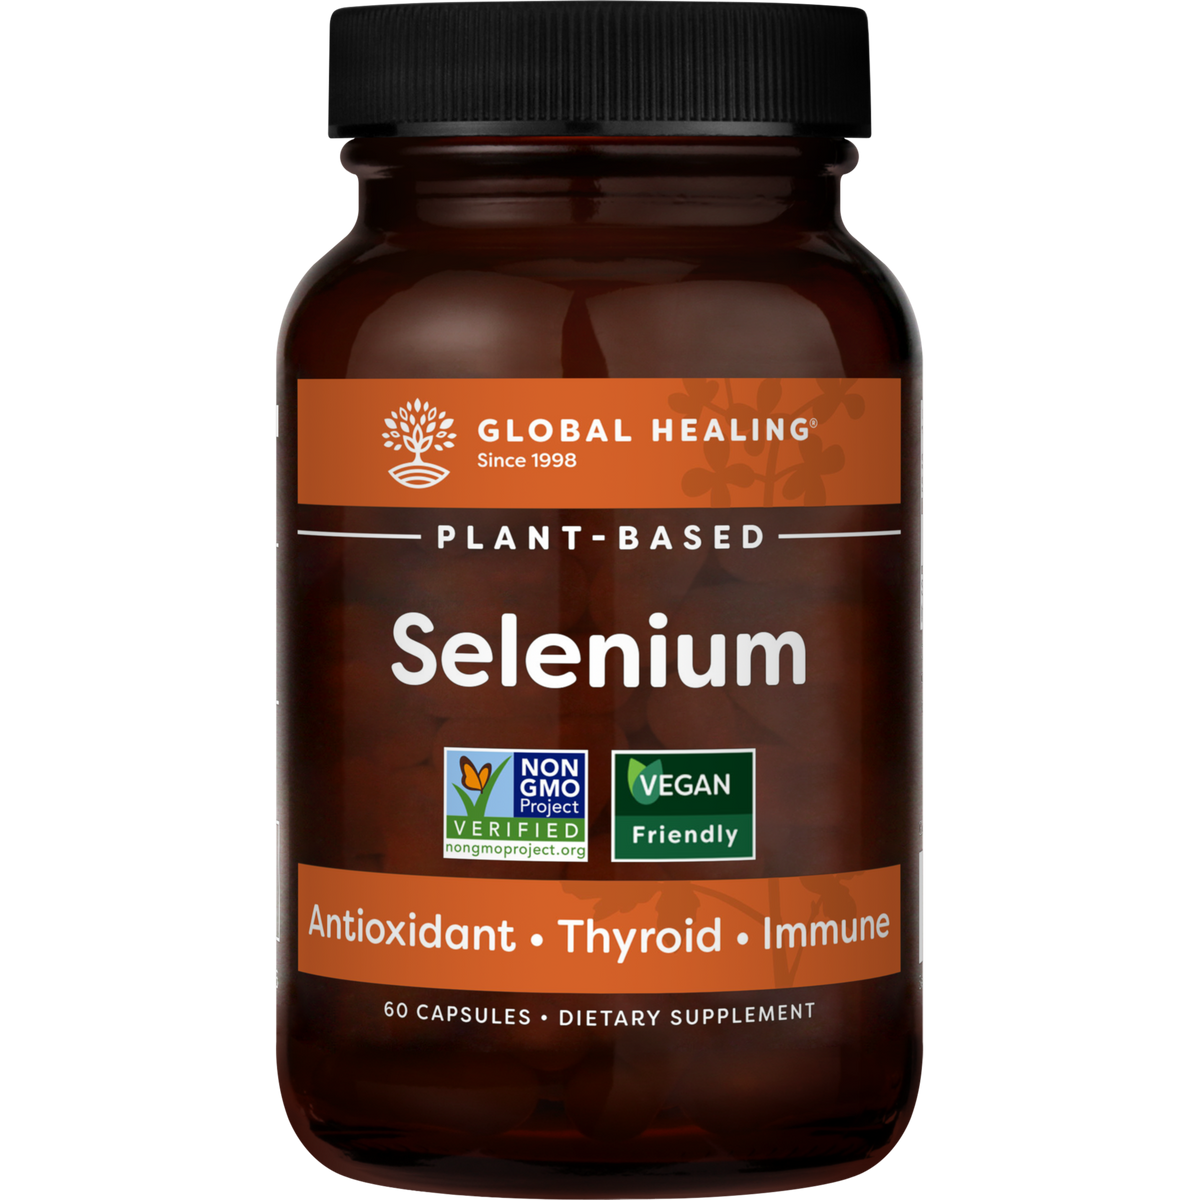 Selenium, Plant-Based, Global Healing, 60 Capsules